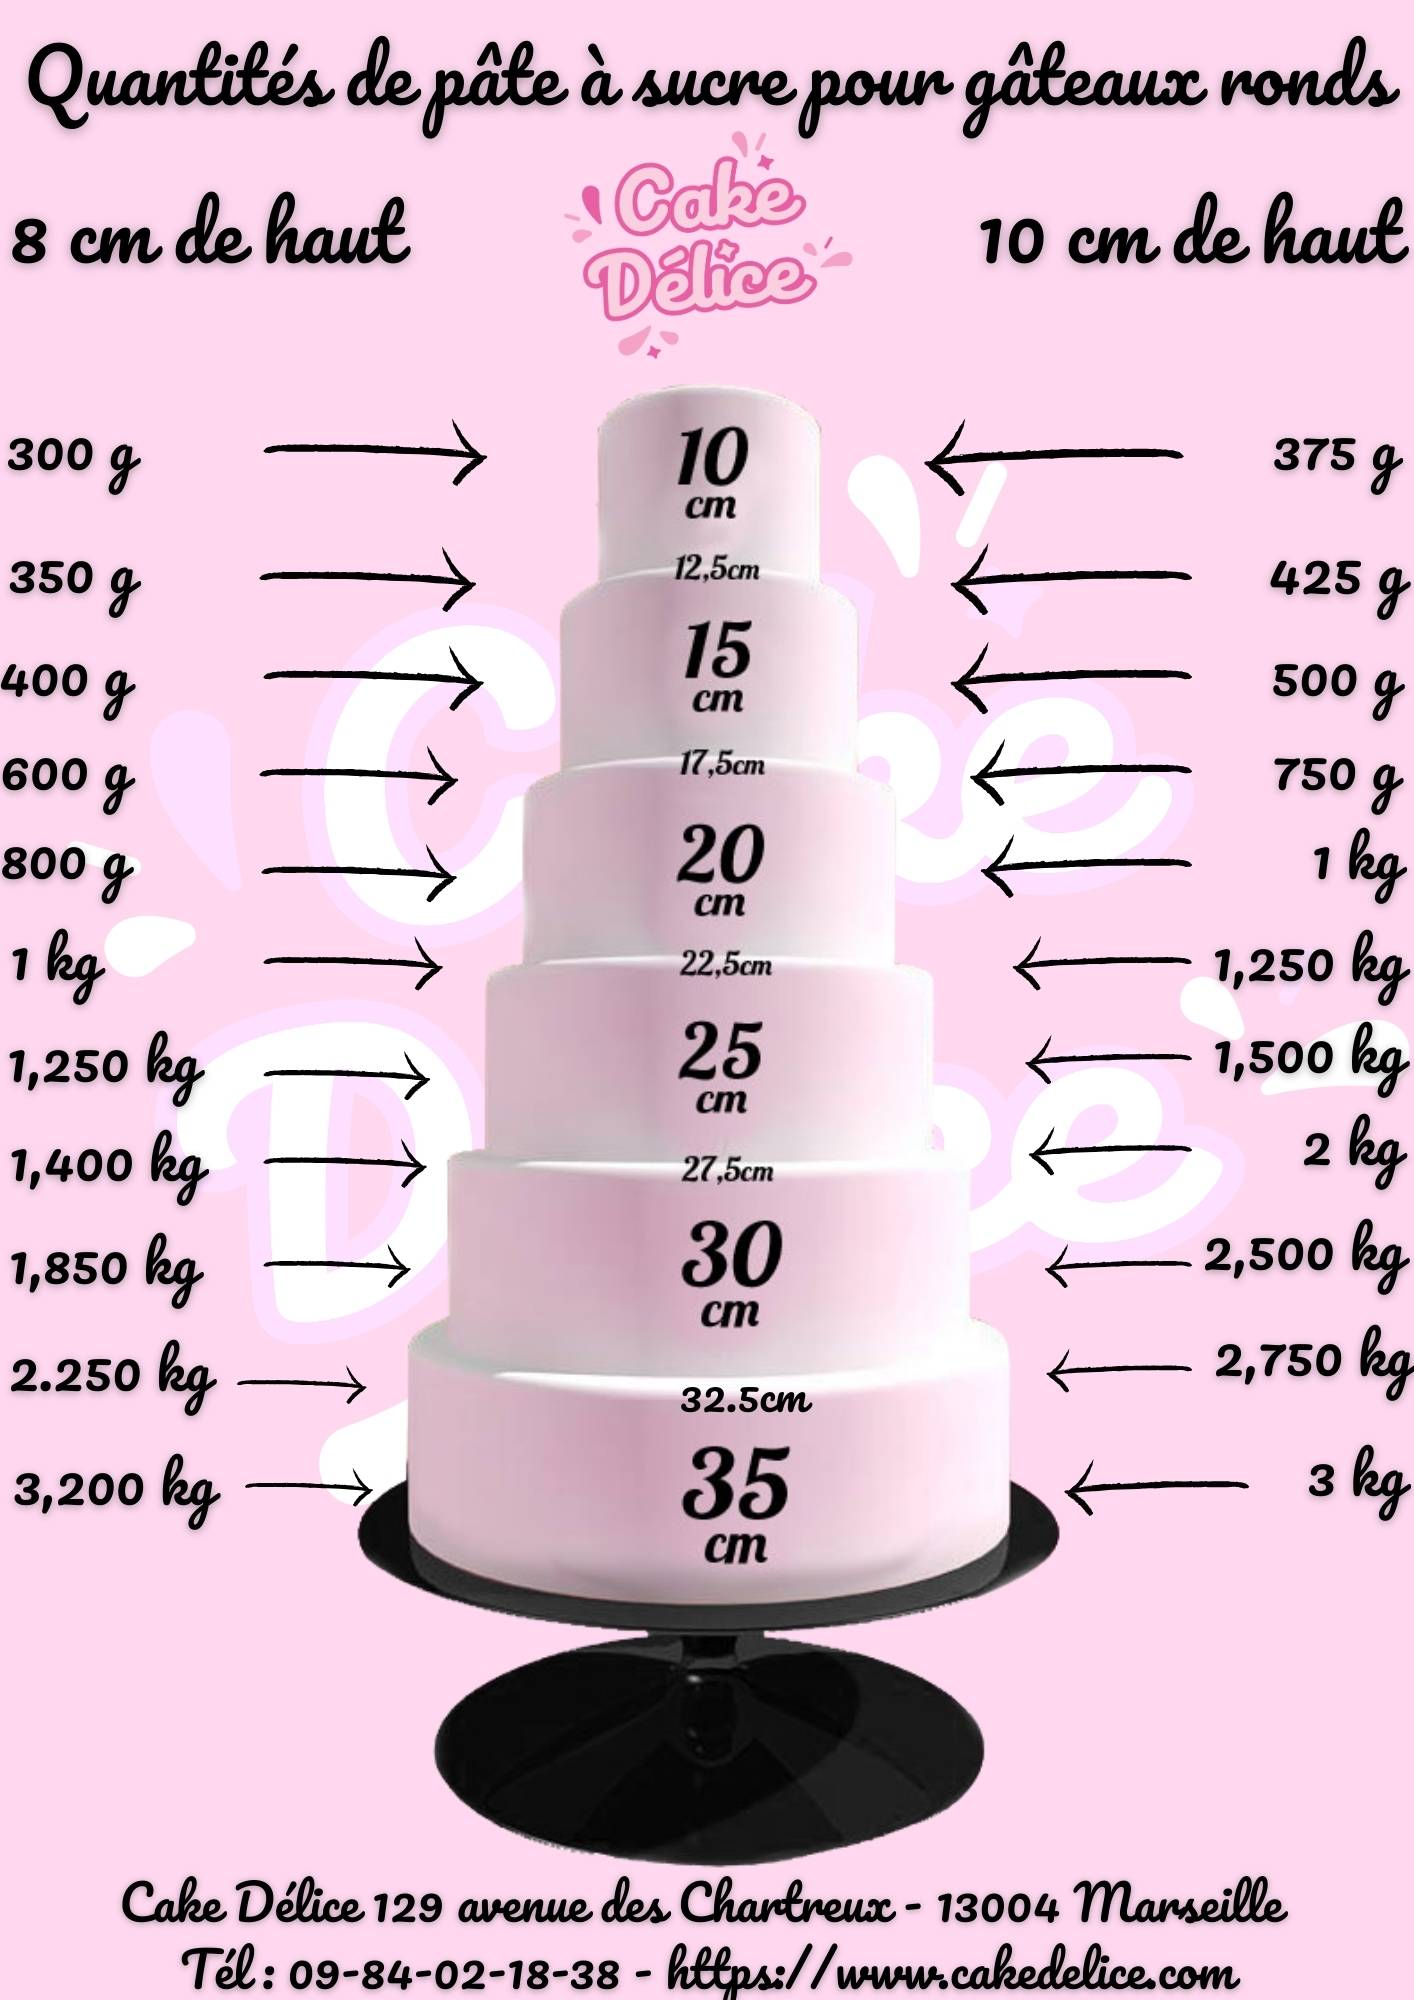 Pâte à sucre de couverture 250gr Renshaw couleurs aux choix à 2,30 €